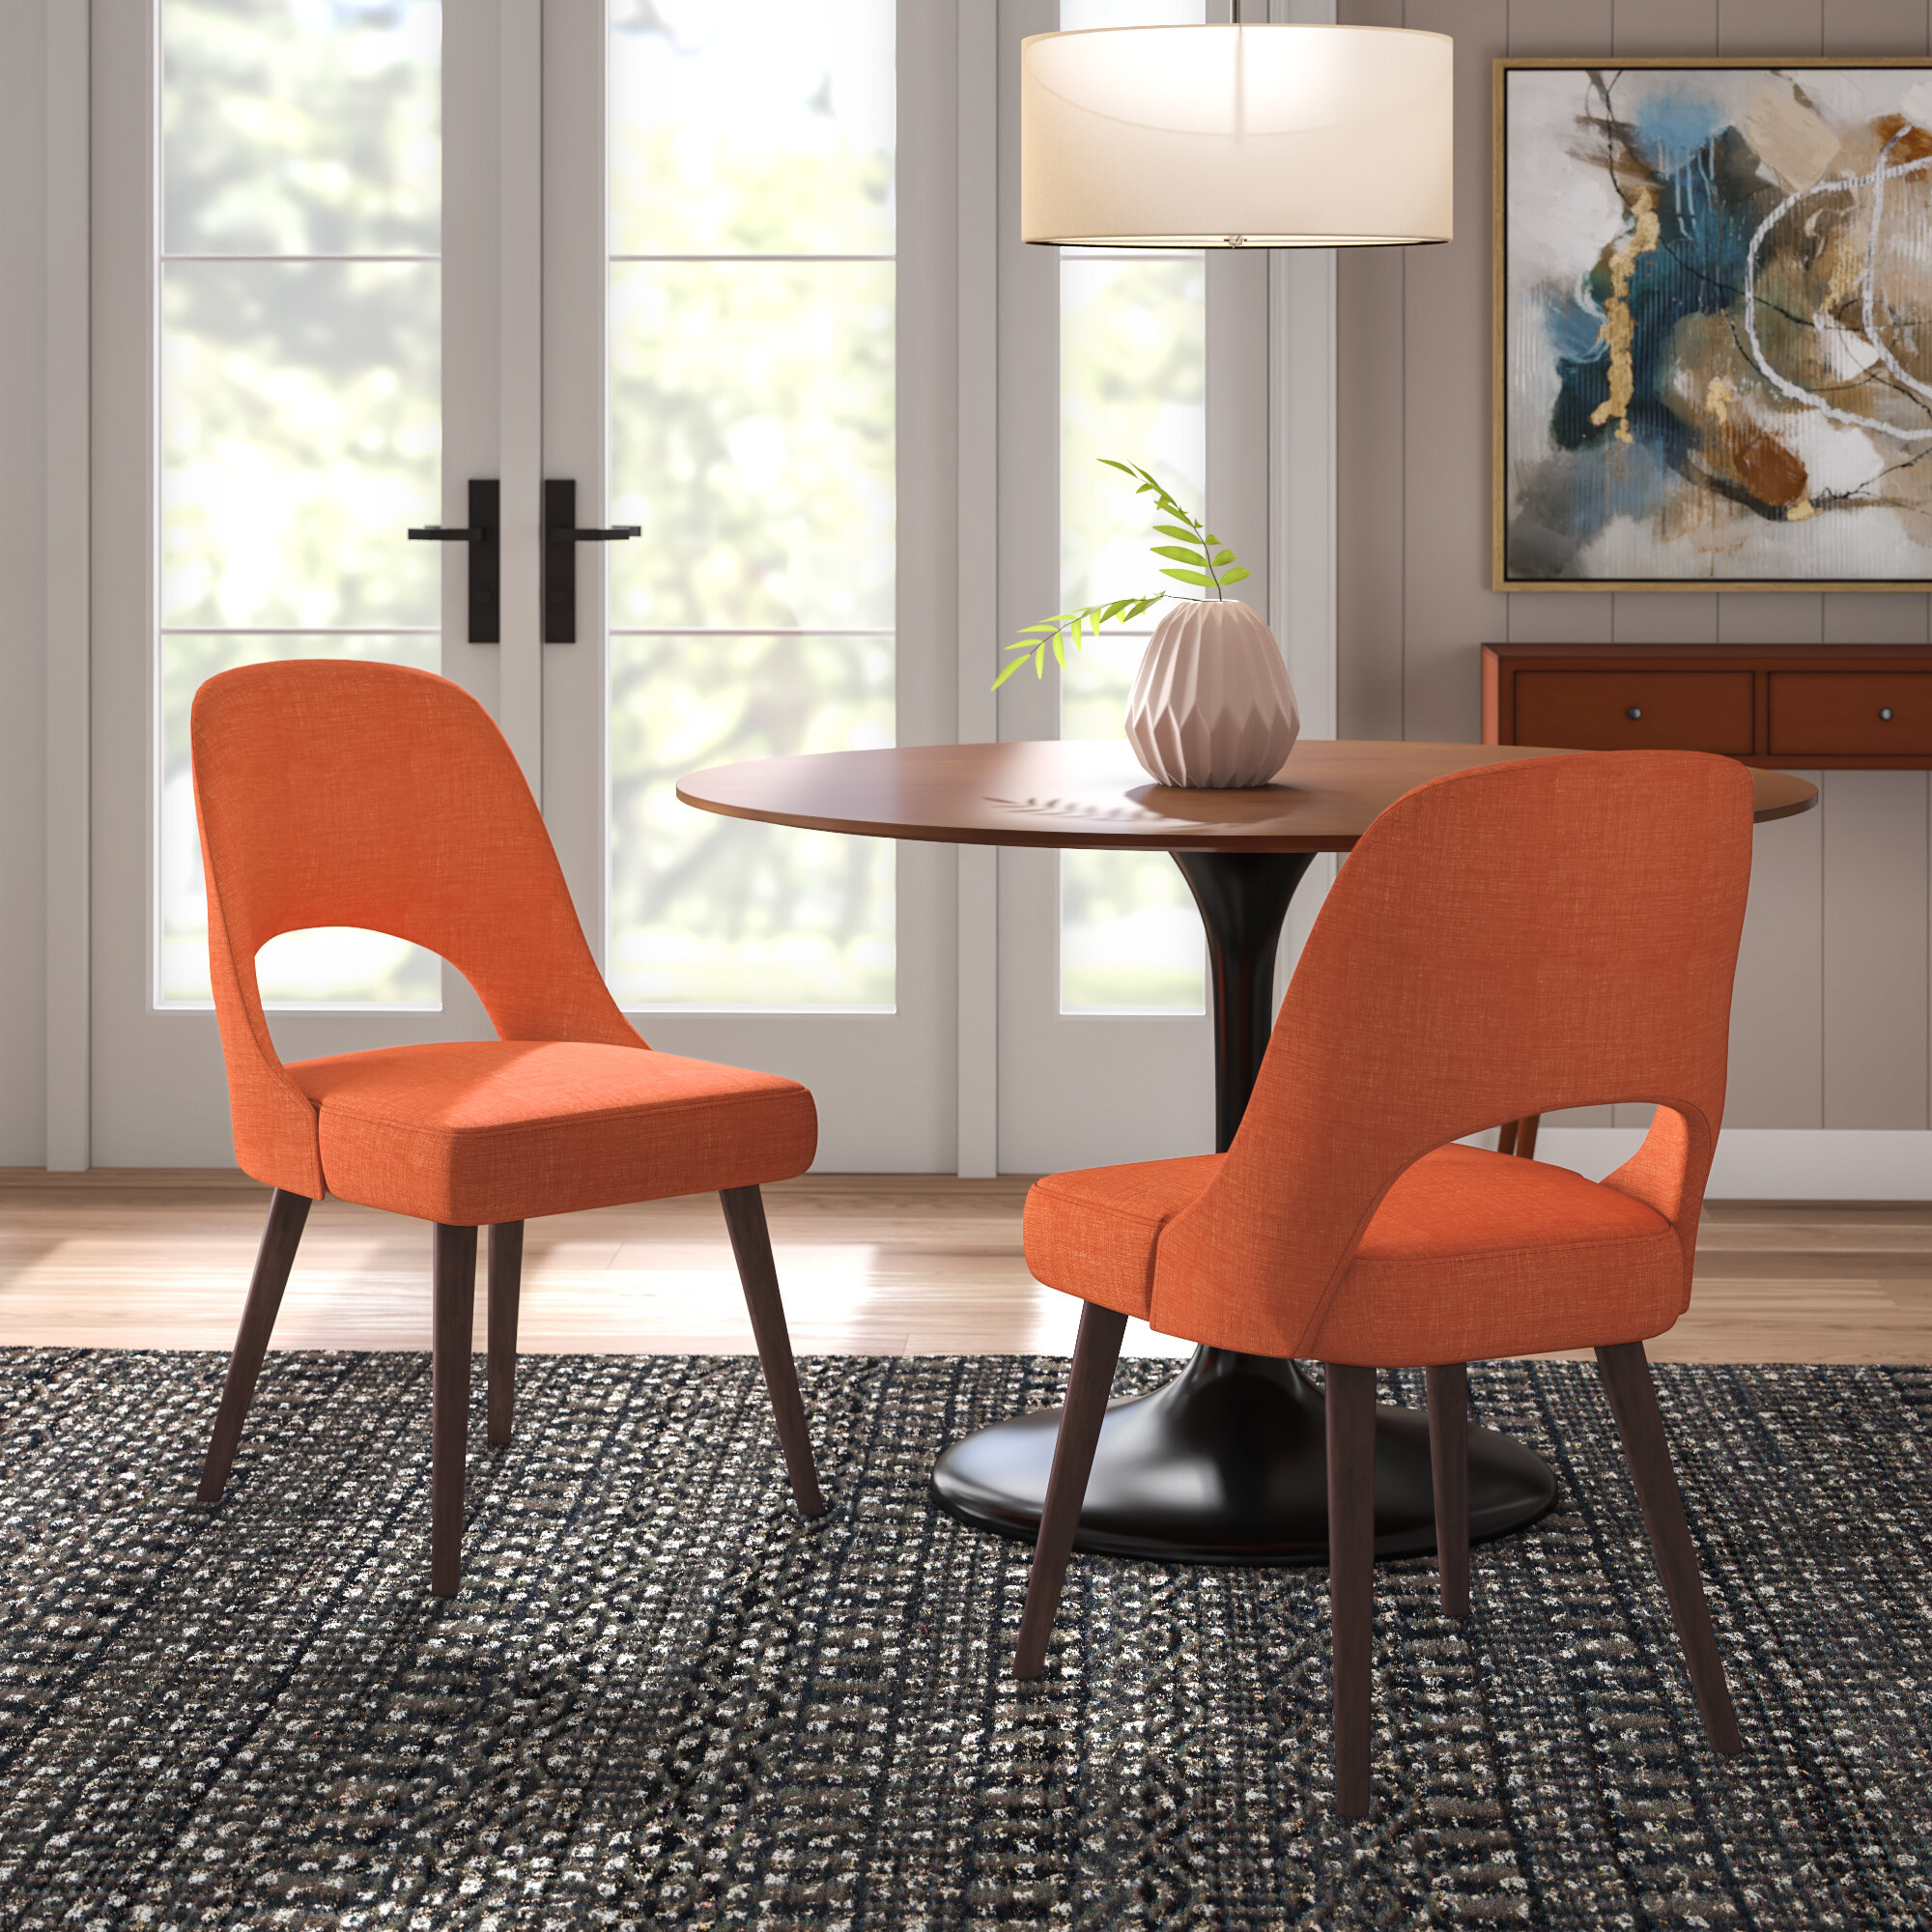 Corrigan Studio Stanford Upholstered Side Chair Reviews Wayfair Ca